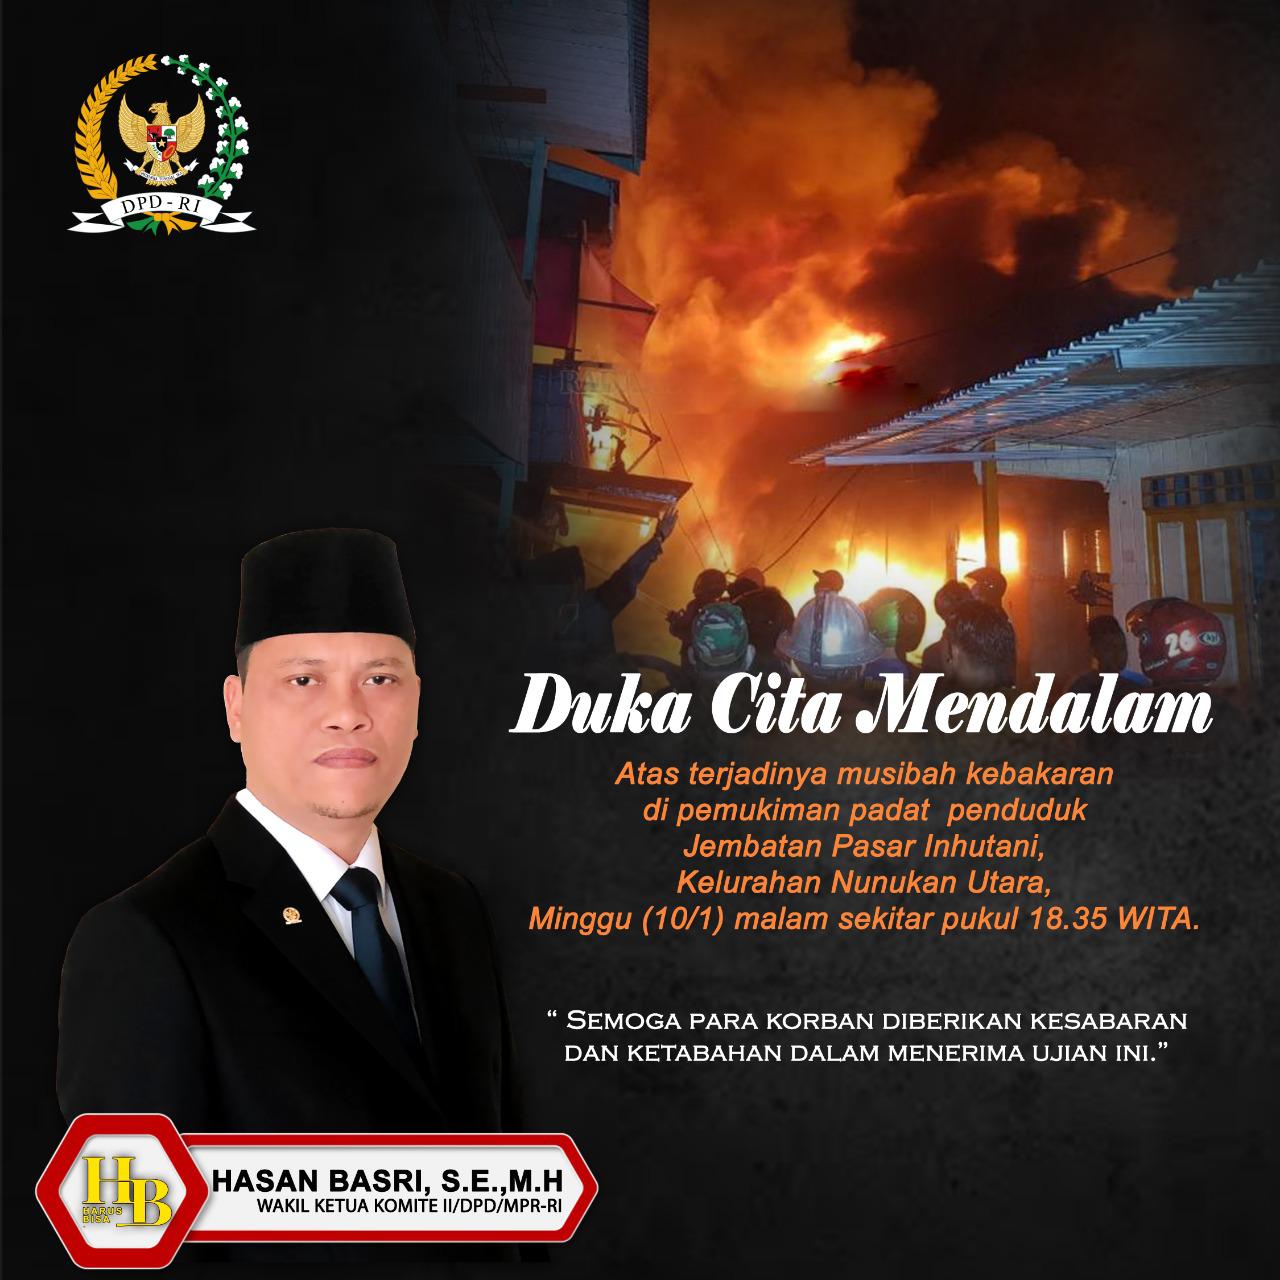 Hasan Basri Siap Turunkan Relawan untuk Membantu Korban Kebakaran di Nunukan